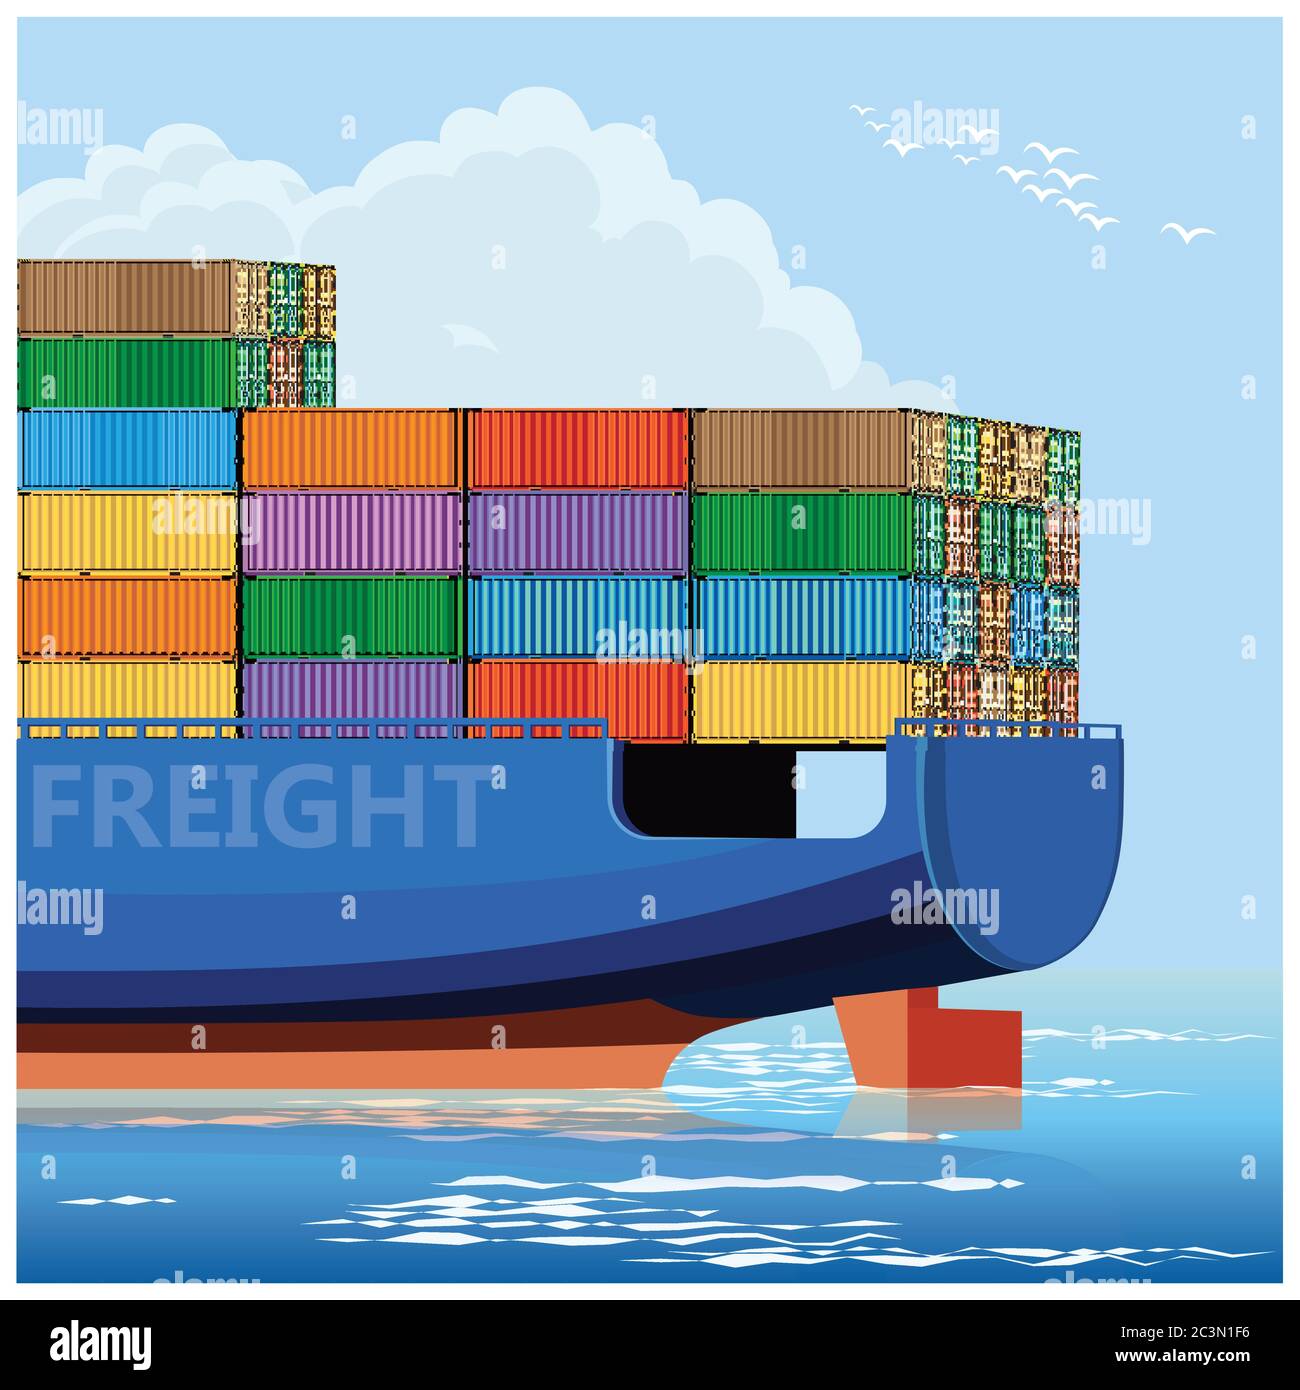 Illustration vectorielle stylisée du navire porteur de conteneurs Illustration de Vecteur